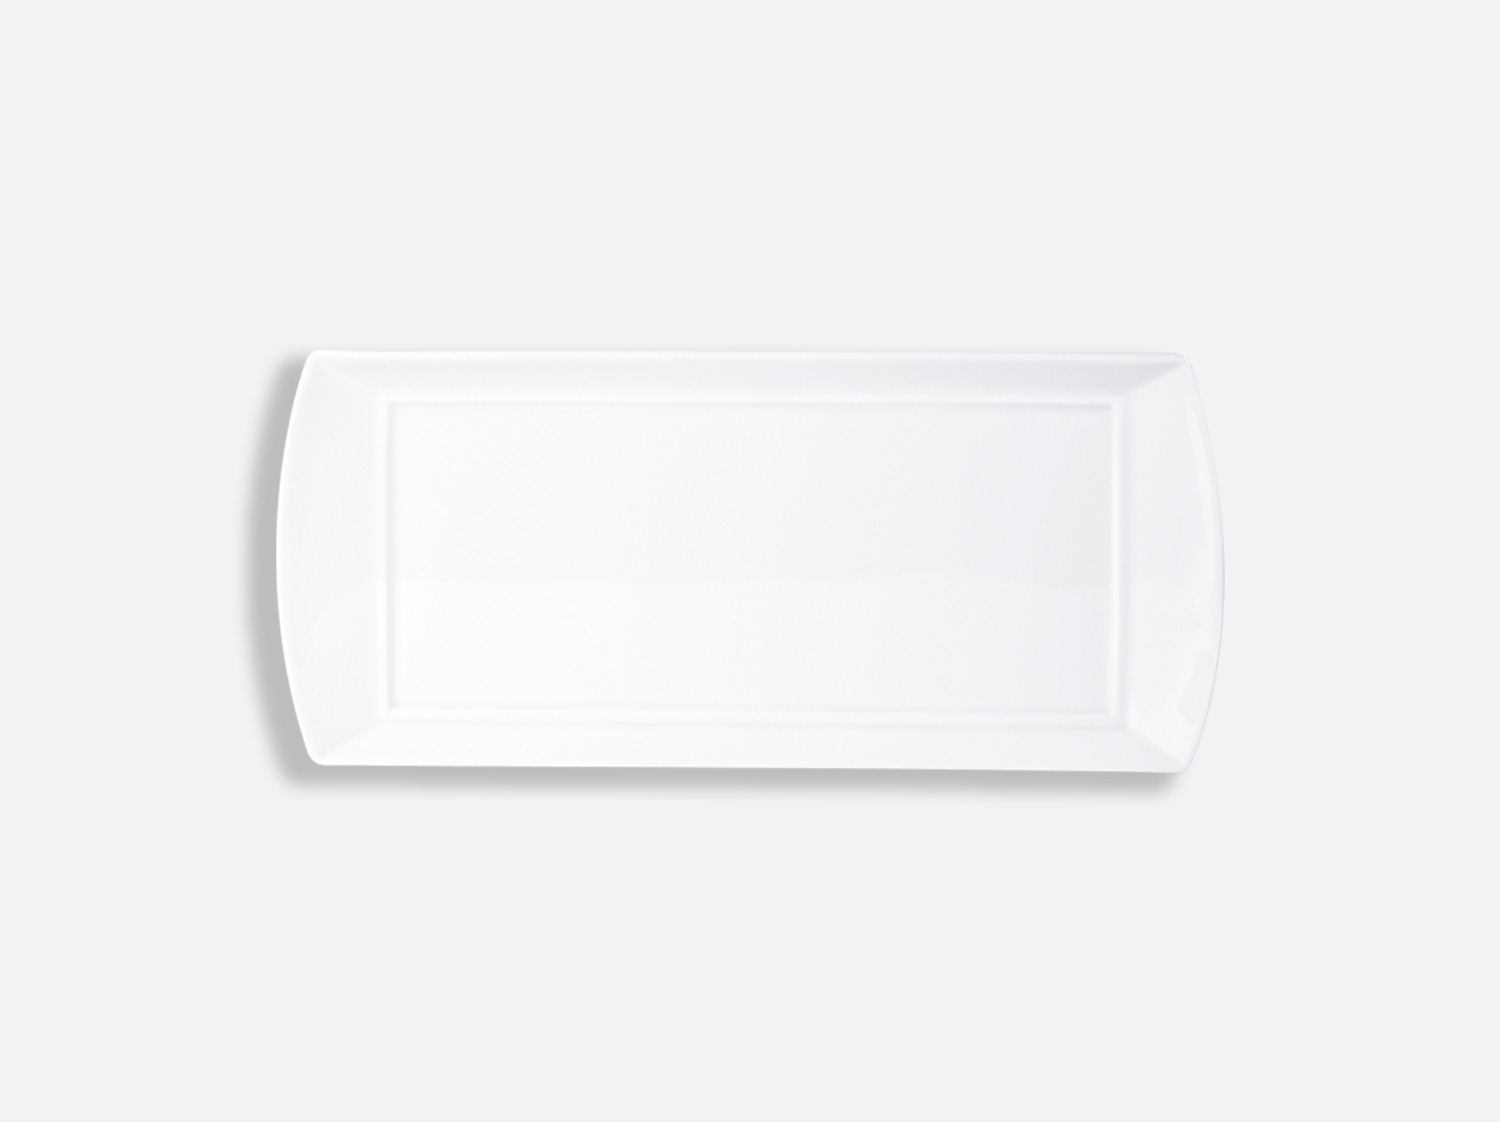 China Sumba large rectangular tray 13.6“ x 6" of the collection Fusion | Bernardaud